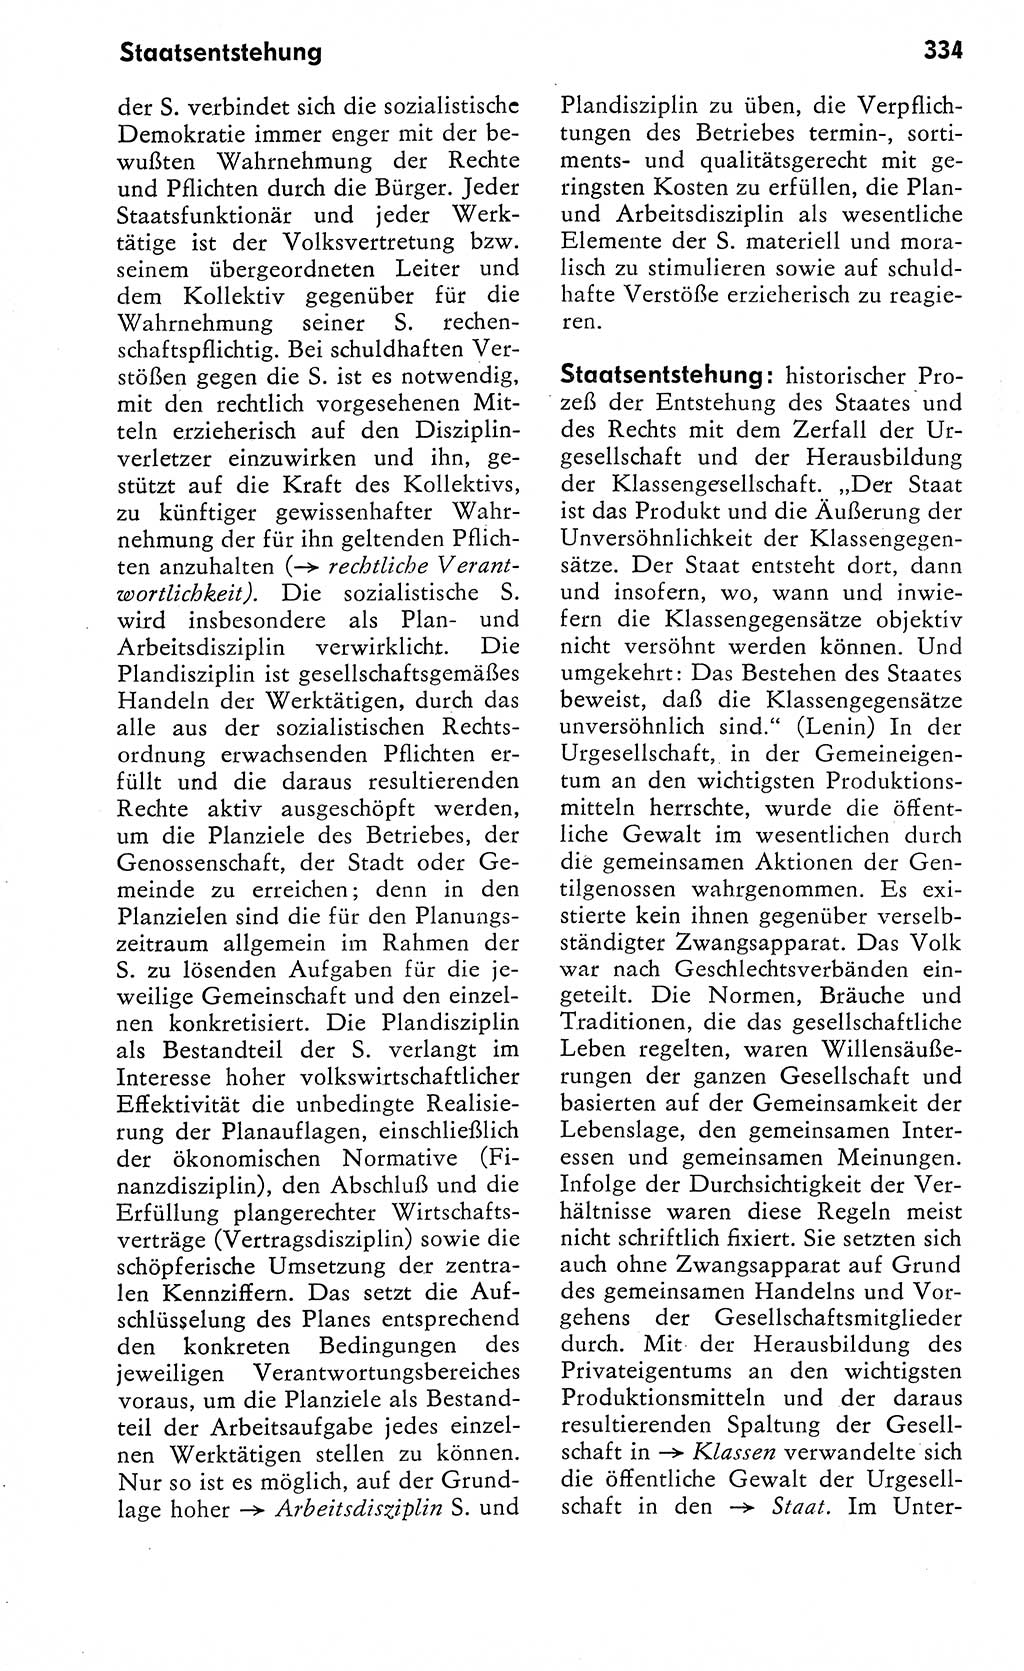 WÃ¶rterbuch zum sozialistischen Staat [Deutsche Demokratische Republik (DDR)] 1974, Seite 334 (Wb. soz. St. DDR 1974, S. 334)